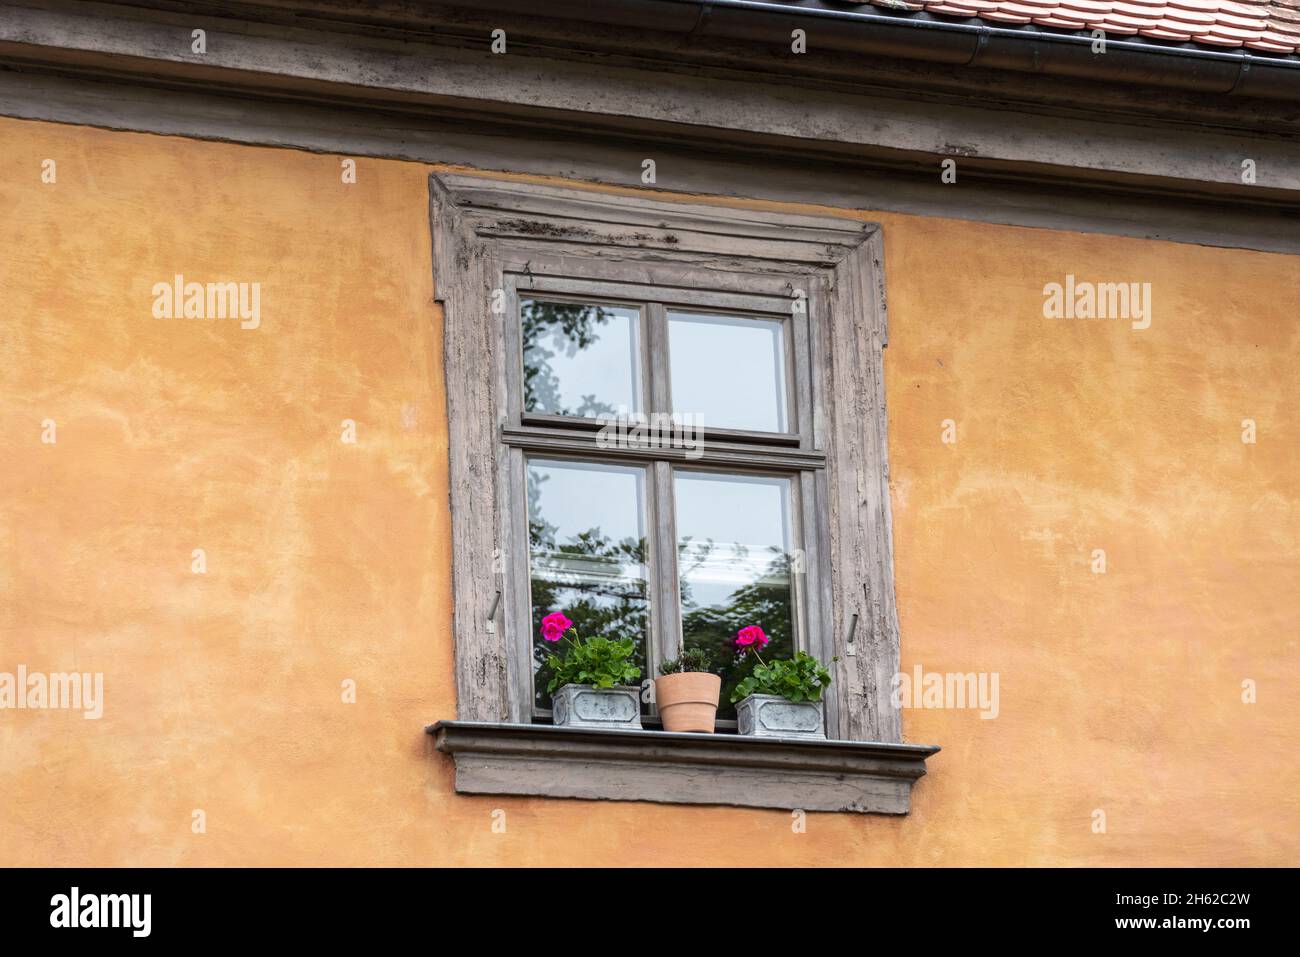 germania, baviera, alta franconia, bamberg, finestra storica, fiori sulla soglia della finestra, la città vecchia di bamberg, appartiene al patrimonio mondiale dell'unesco Foto Stock